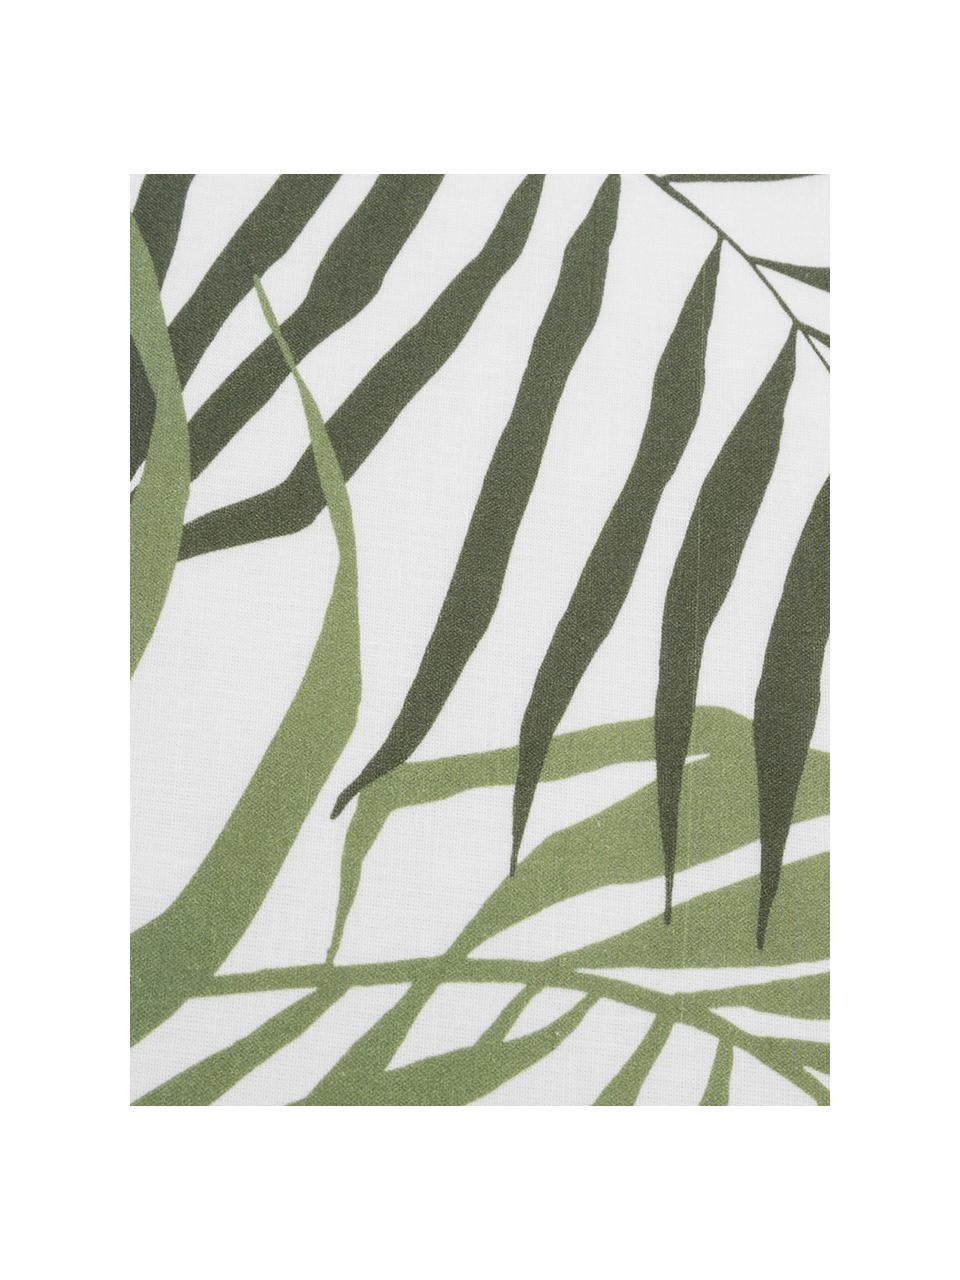 Dubbelzijdig dekbedovertrek Dalor, Katoen, Bovenzijde: groen, wit. Onderzijde: wit, 140 x 200 cm